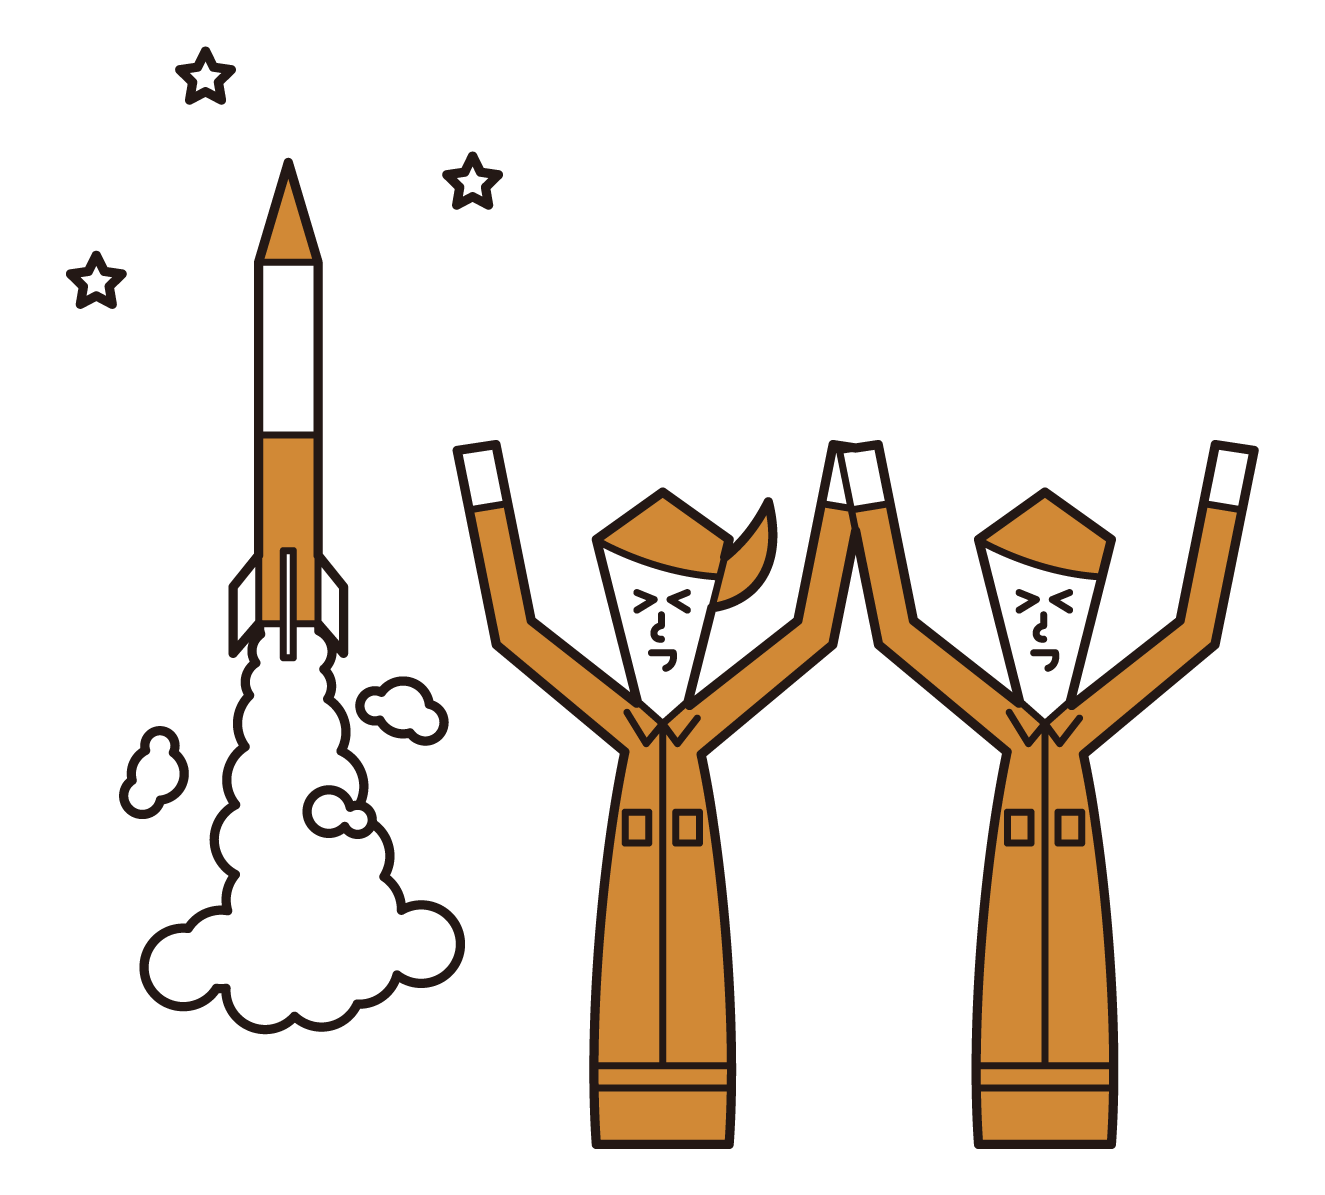 ロケットの打ち上げを成功した人たちのイラスト